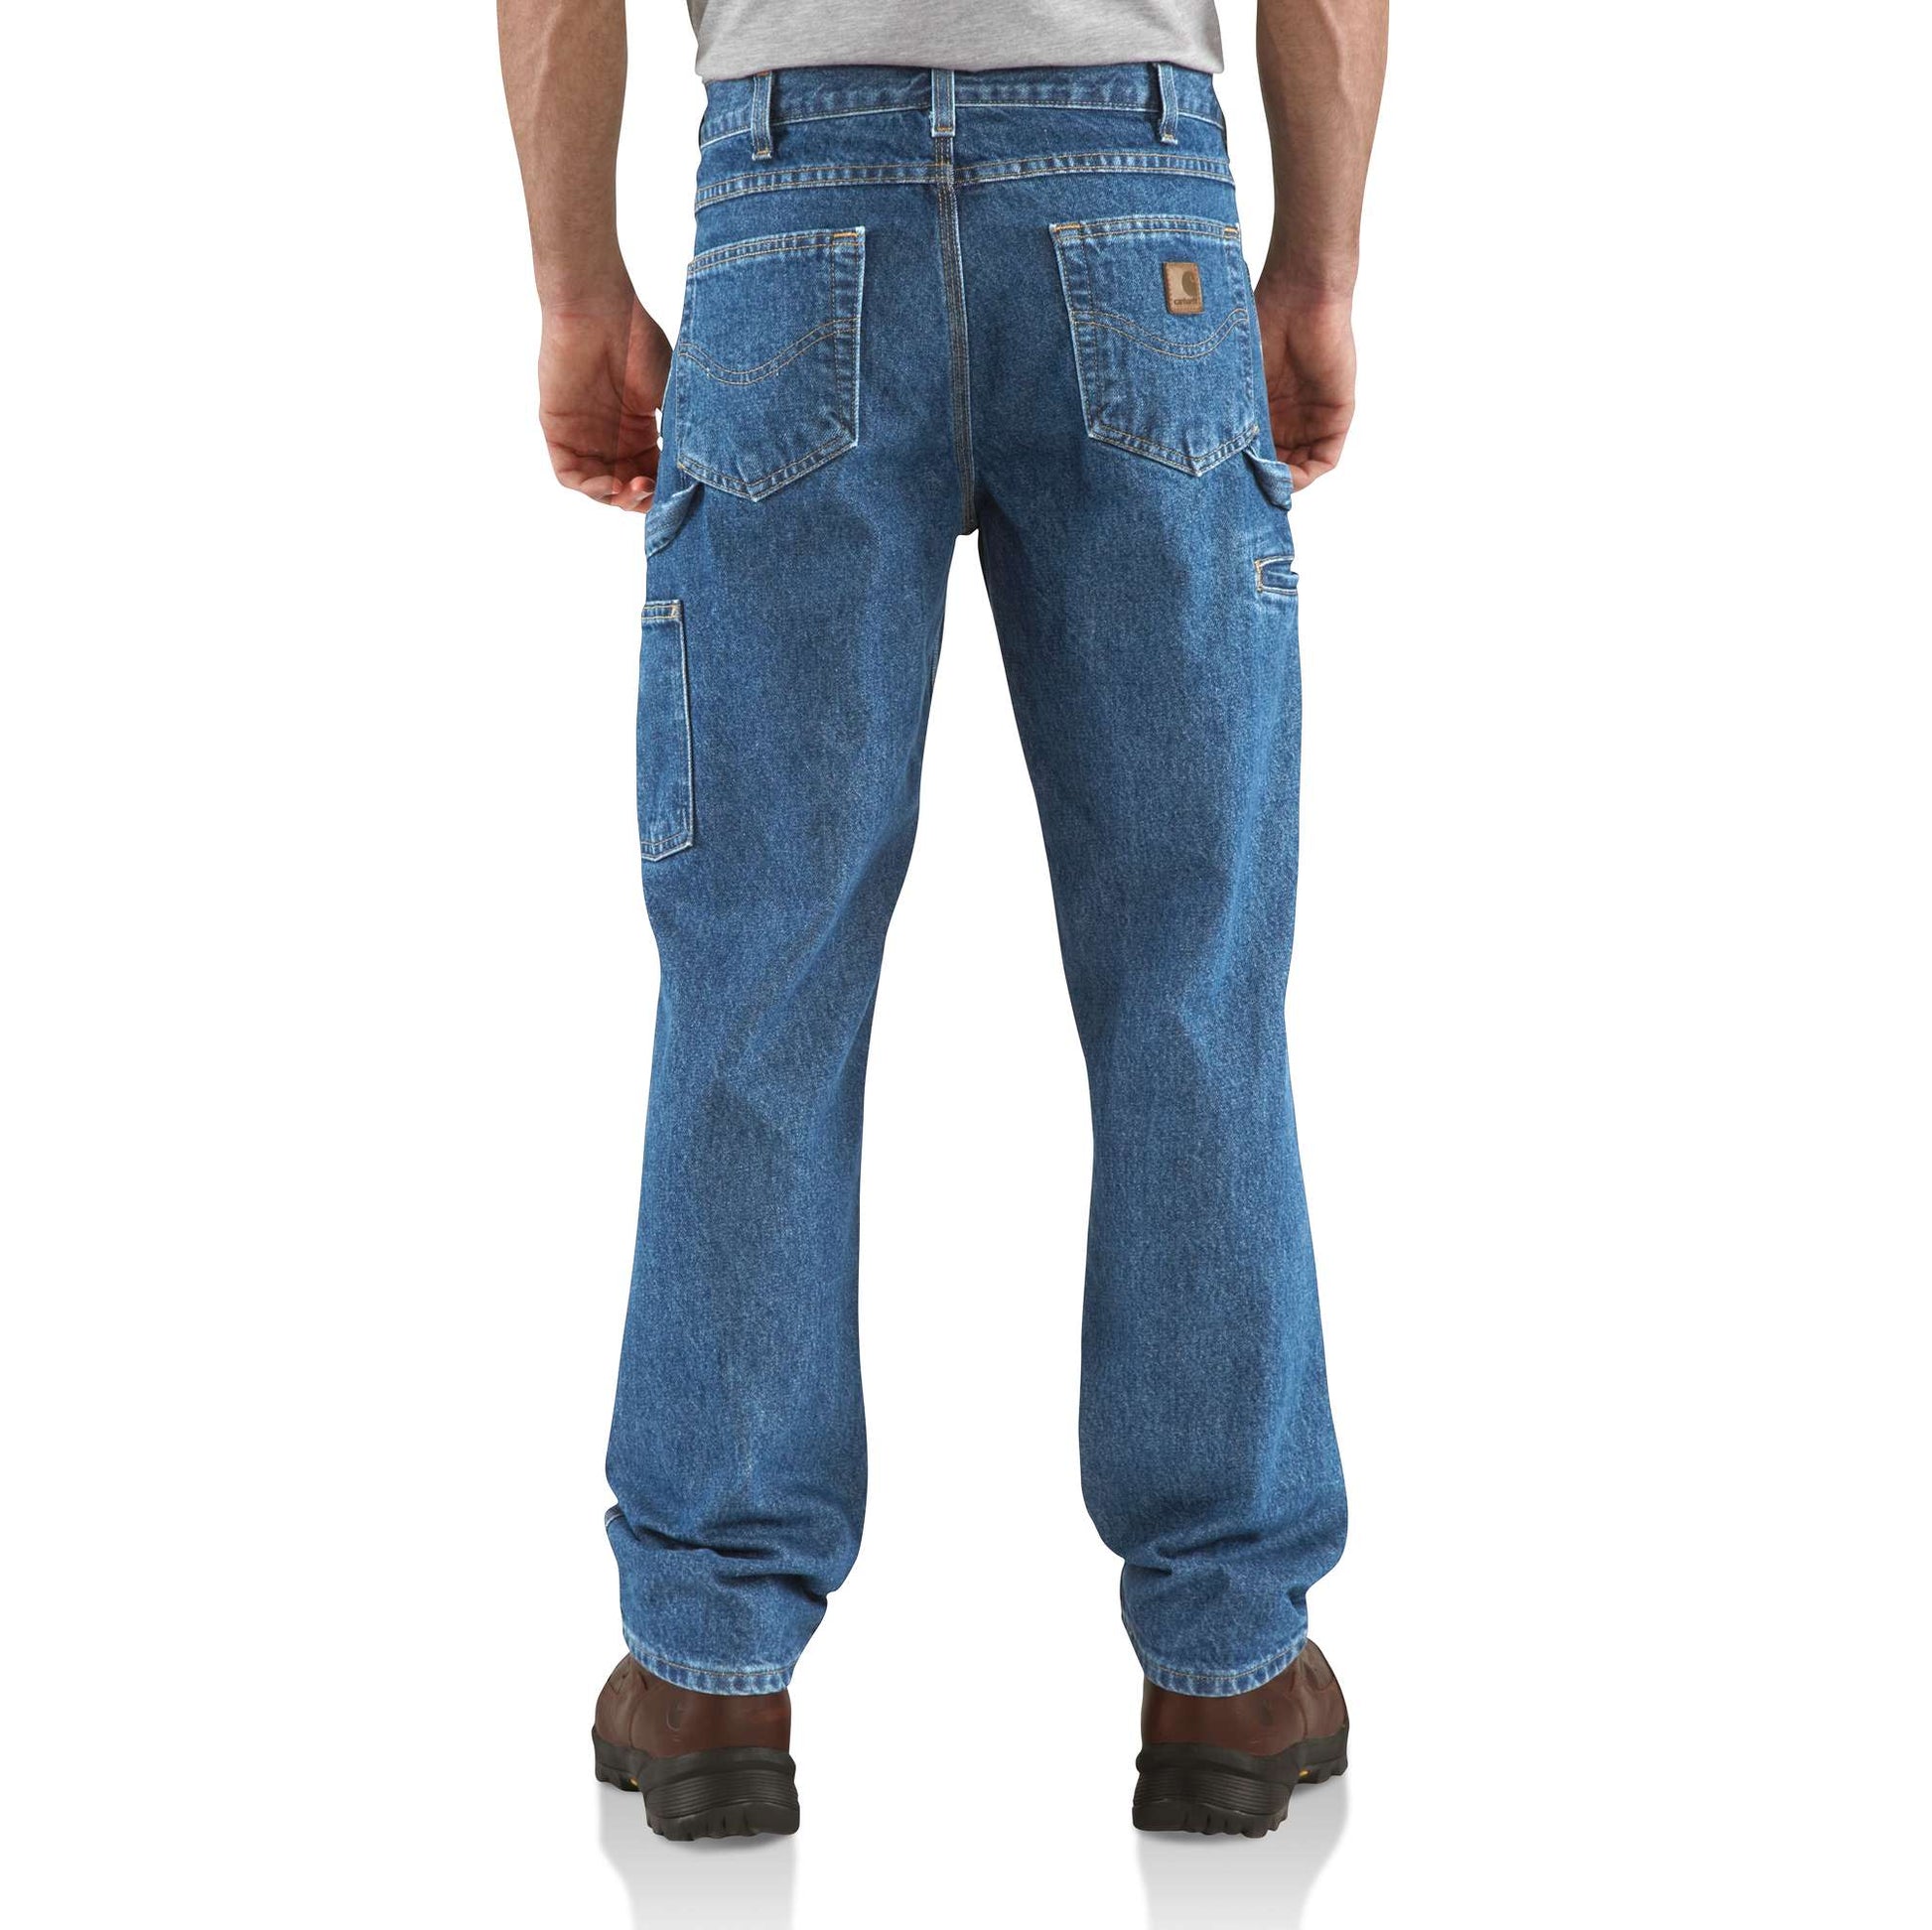 Loose Carpenter Jeans - Denim blue - Men